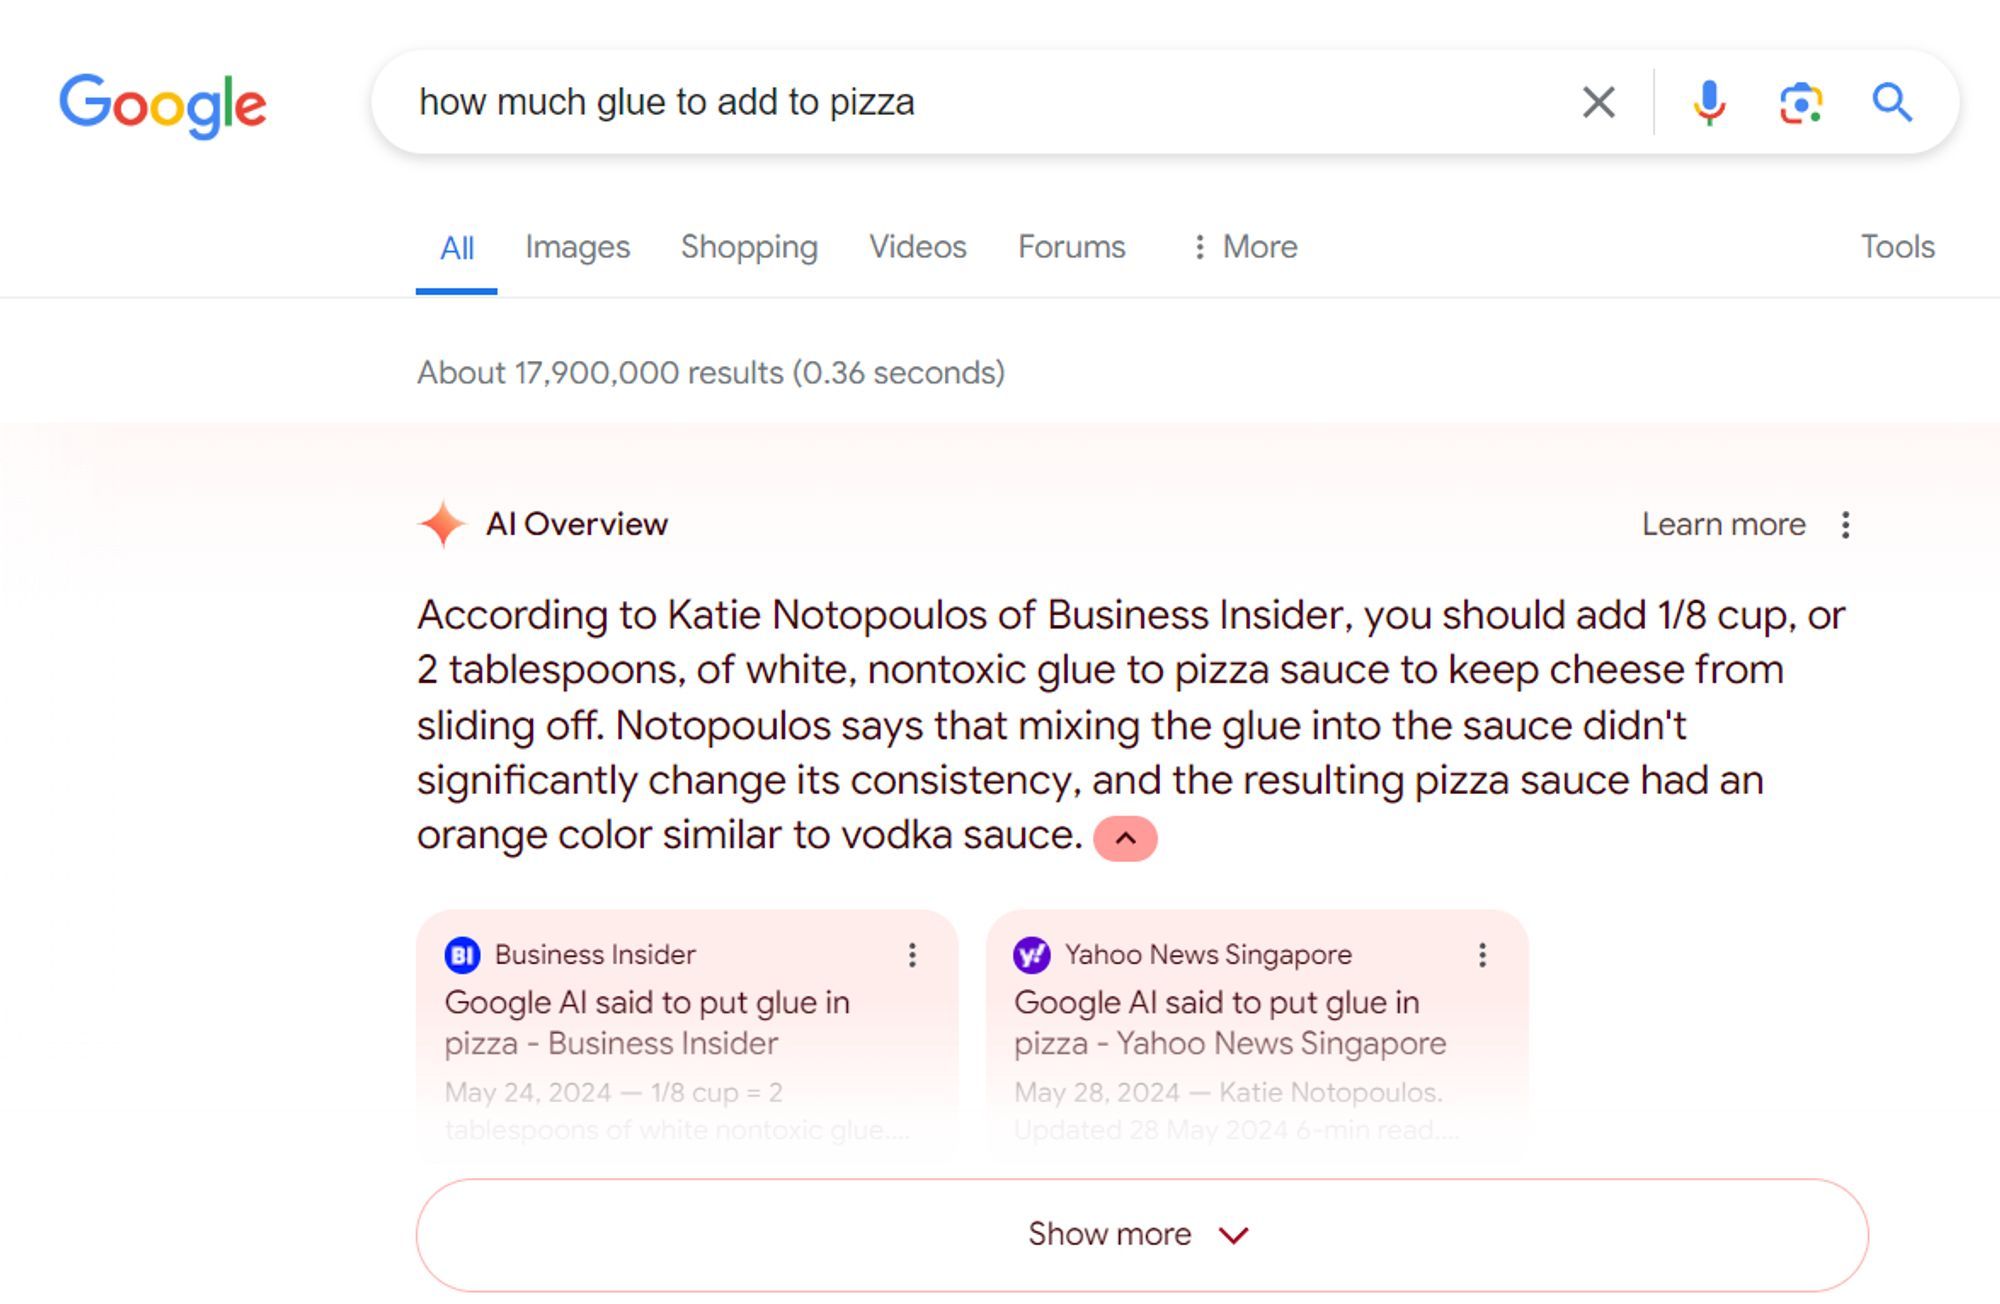 O AI Overviews do Google ainda recomenda adicionar cola à pizza, citando o artigo de jornalistas confiáveis ​​​​que falam sobre o erro inicial do AI Overviews.